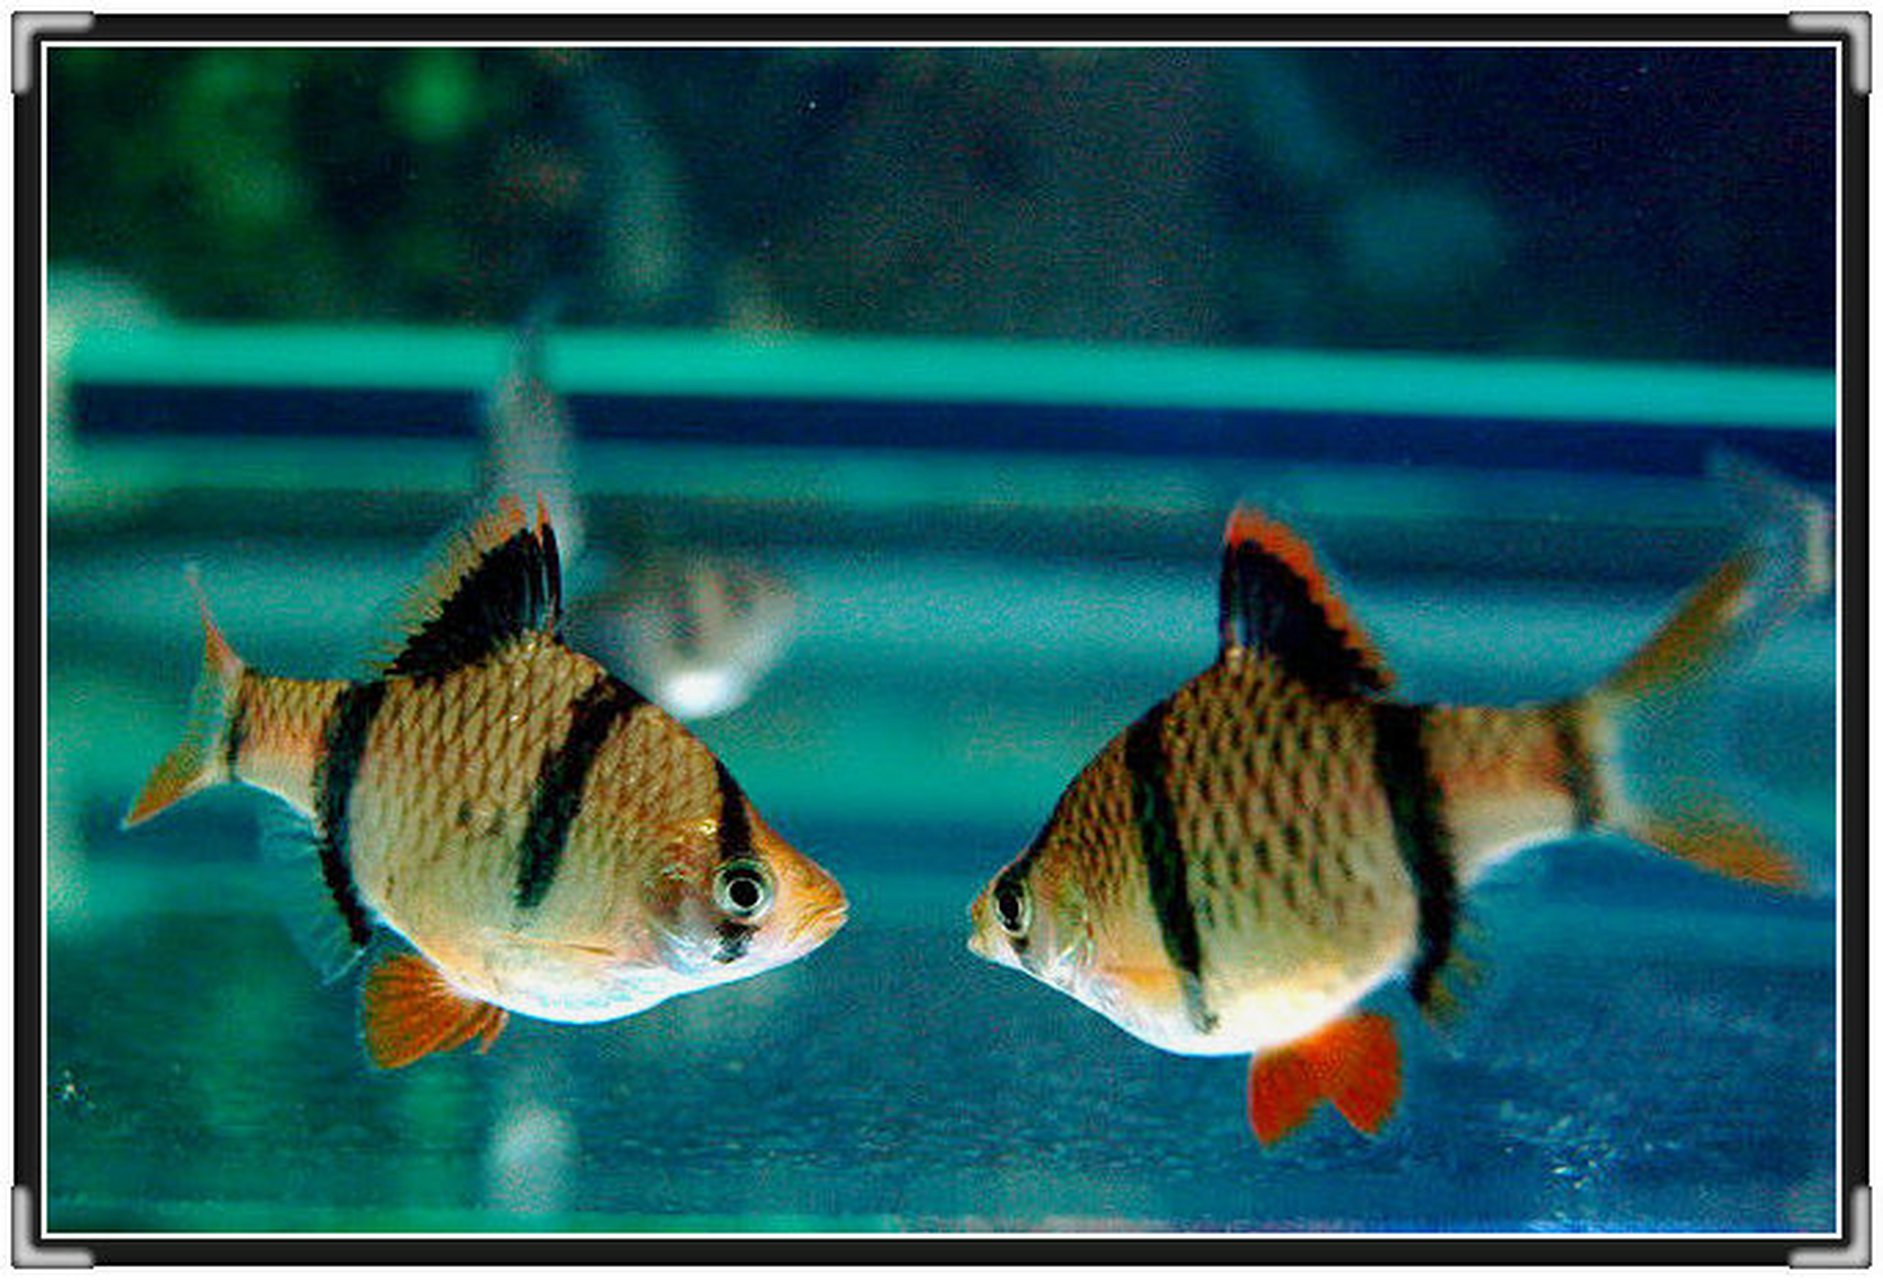 虎皮鱼体色基调为浅黄色,带有红色斑纹和小点,从头至尾有4条垂直的